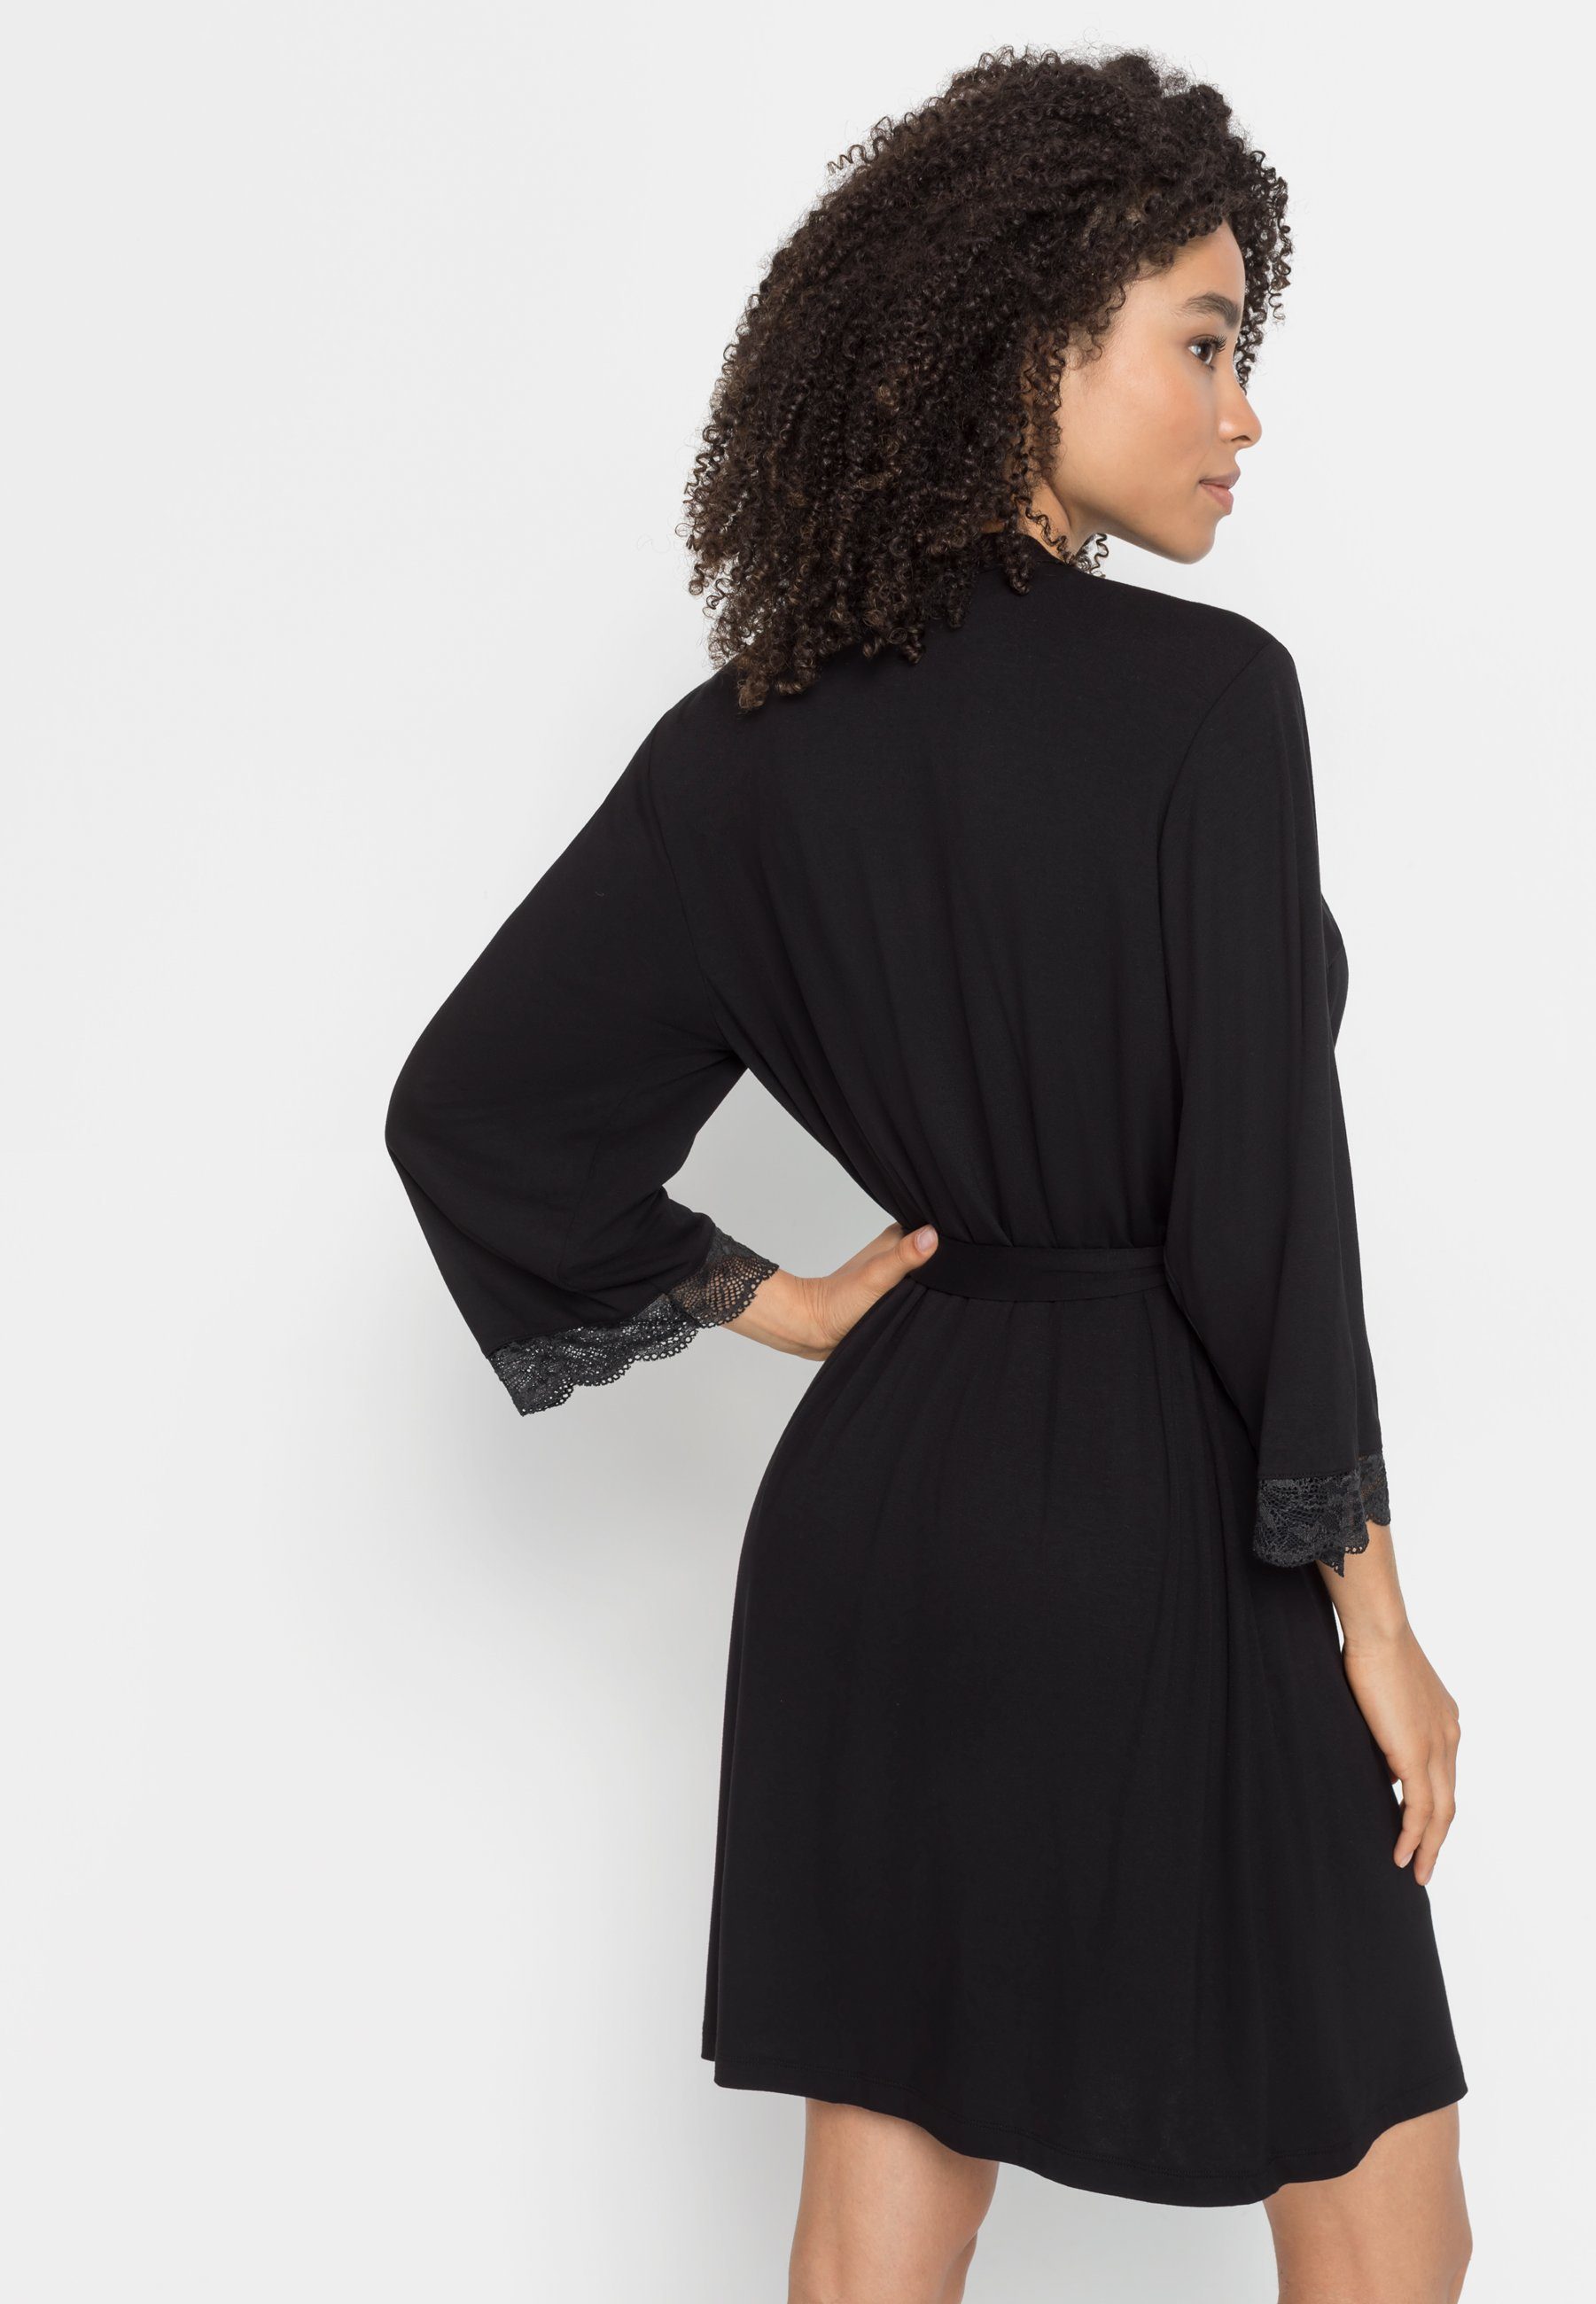 LASCANA Kimono, Midilänge, Single-Jersey, Kimono-Kragen, schwarz mit Spitzendetails schönen